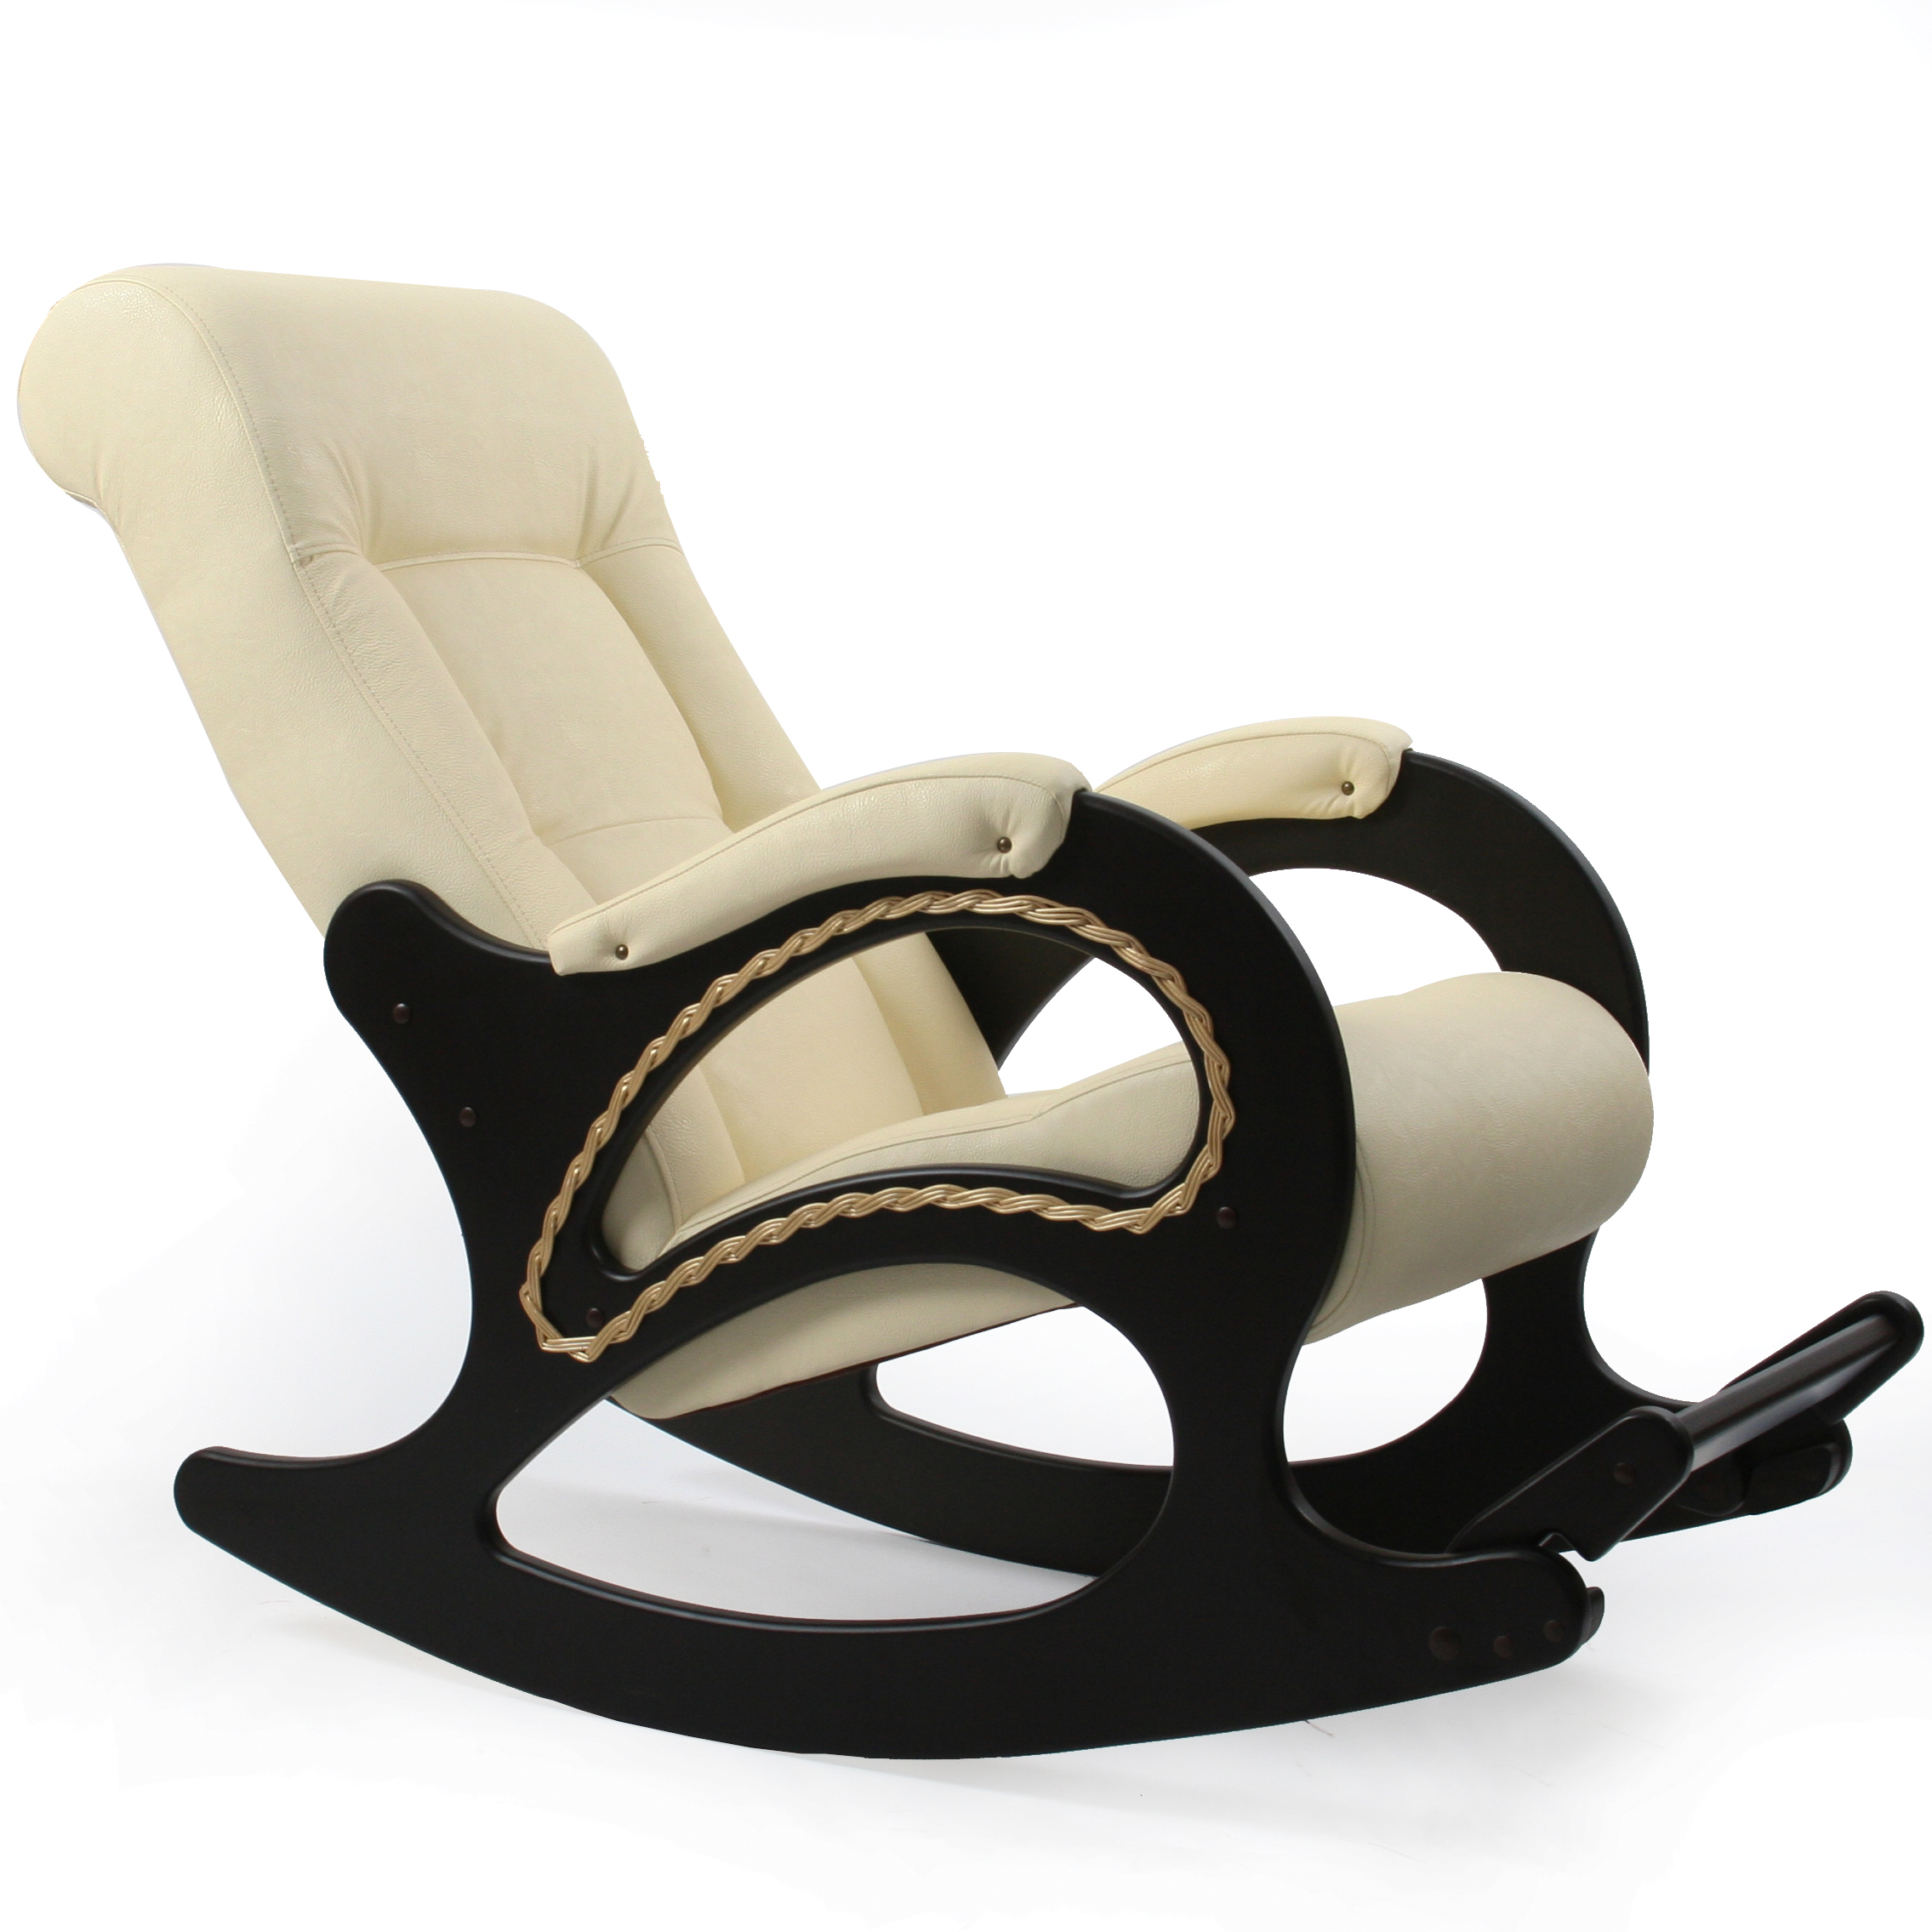 Недорогие кресла качалки от производителя. Кресло-качалка комфорт (мод.44/Дунди-112/венге). Кресло качалка модель 44 Импэкс. Кресло-качалка комфорт модель 44. Кресло качалка модель 44 Импекс.